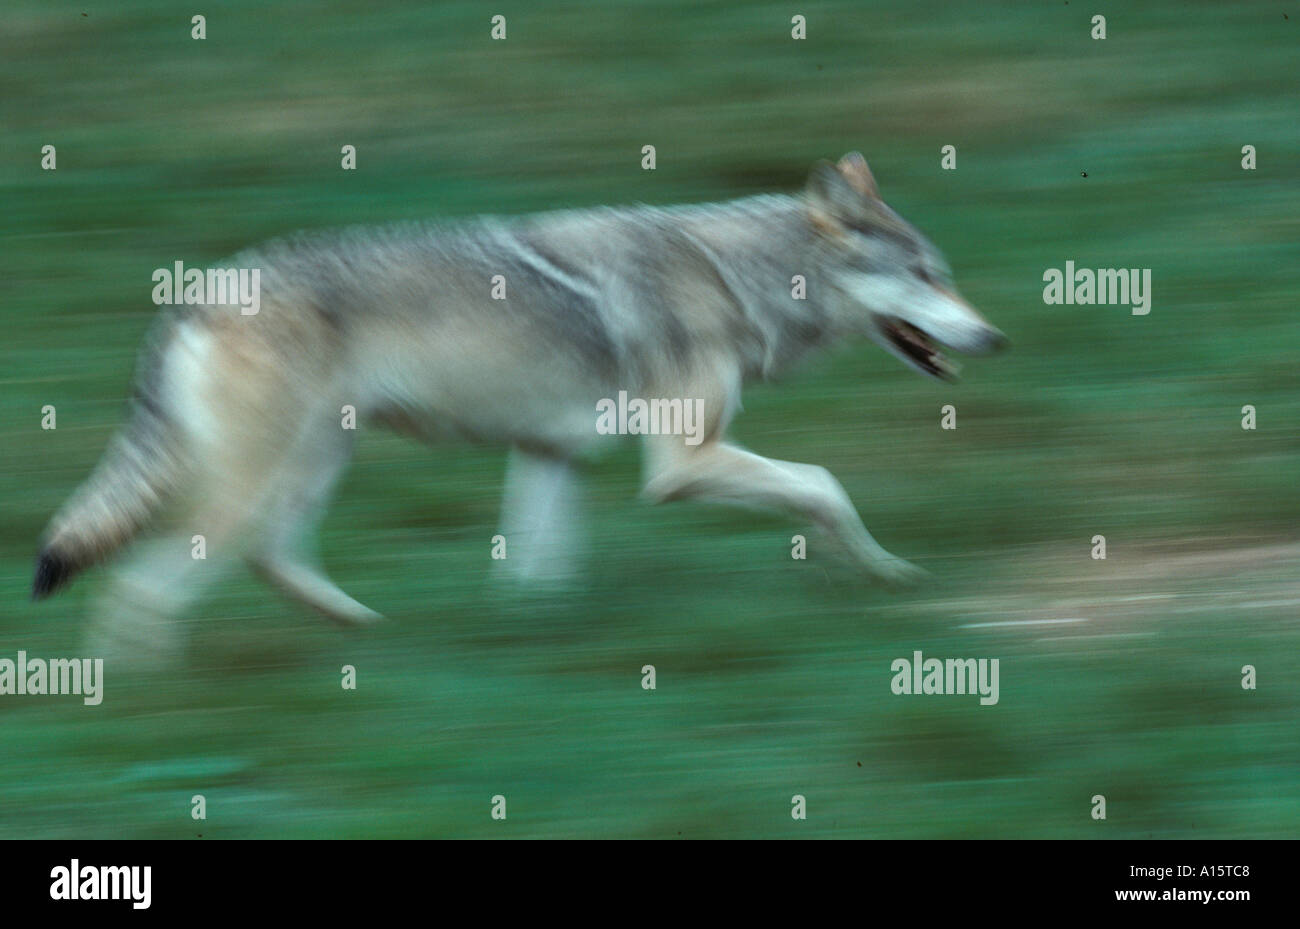 Loup gris eurasien Canis lupus en cours d'exécution Banque D'Images